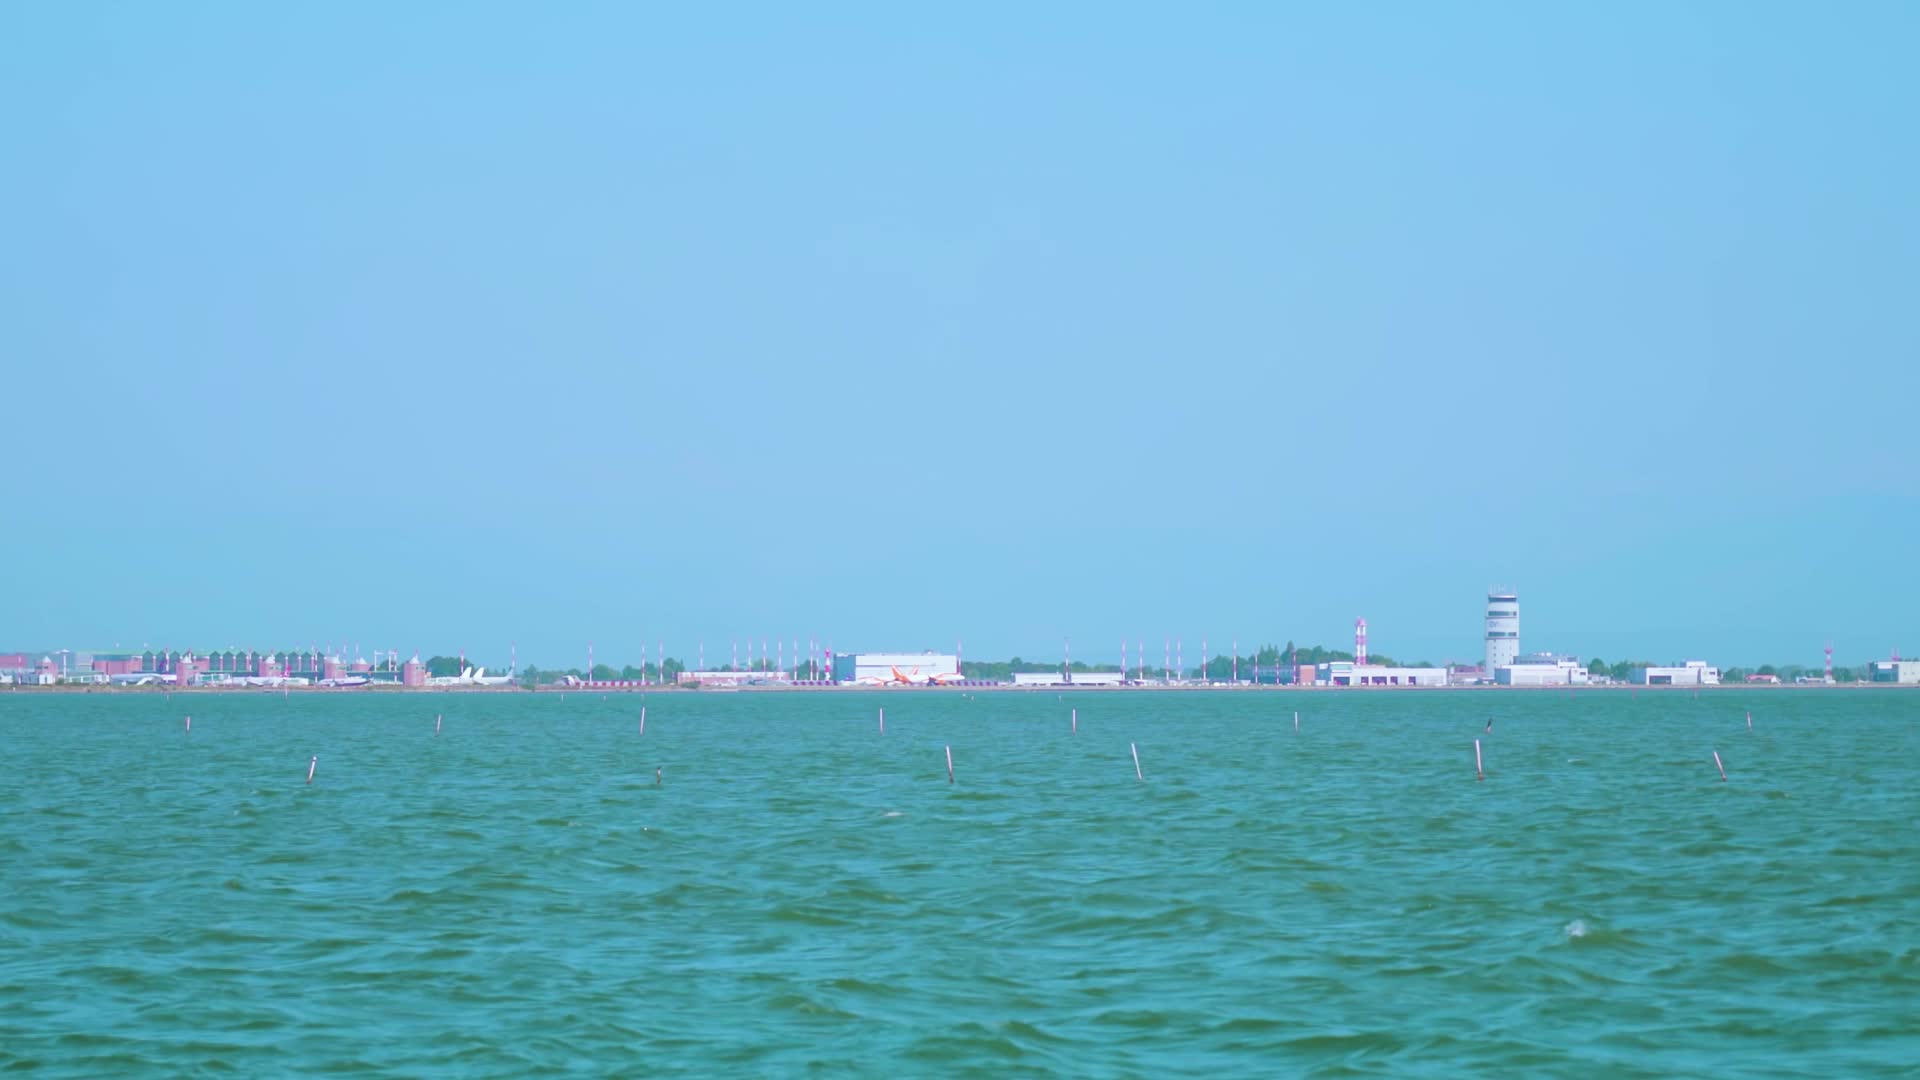 Vista dell’aeroporto di Venezia dalla laguna con il decollo dell’aereo